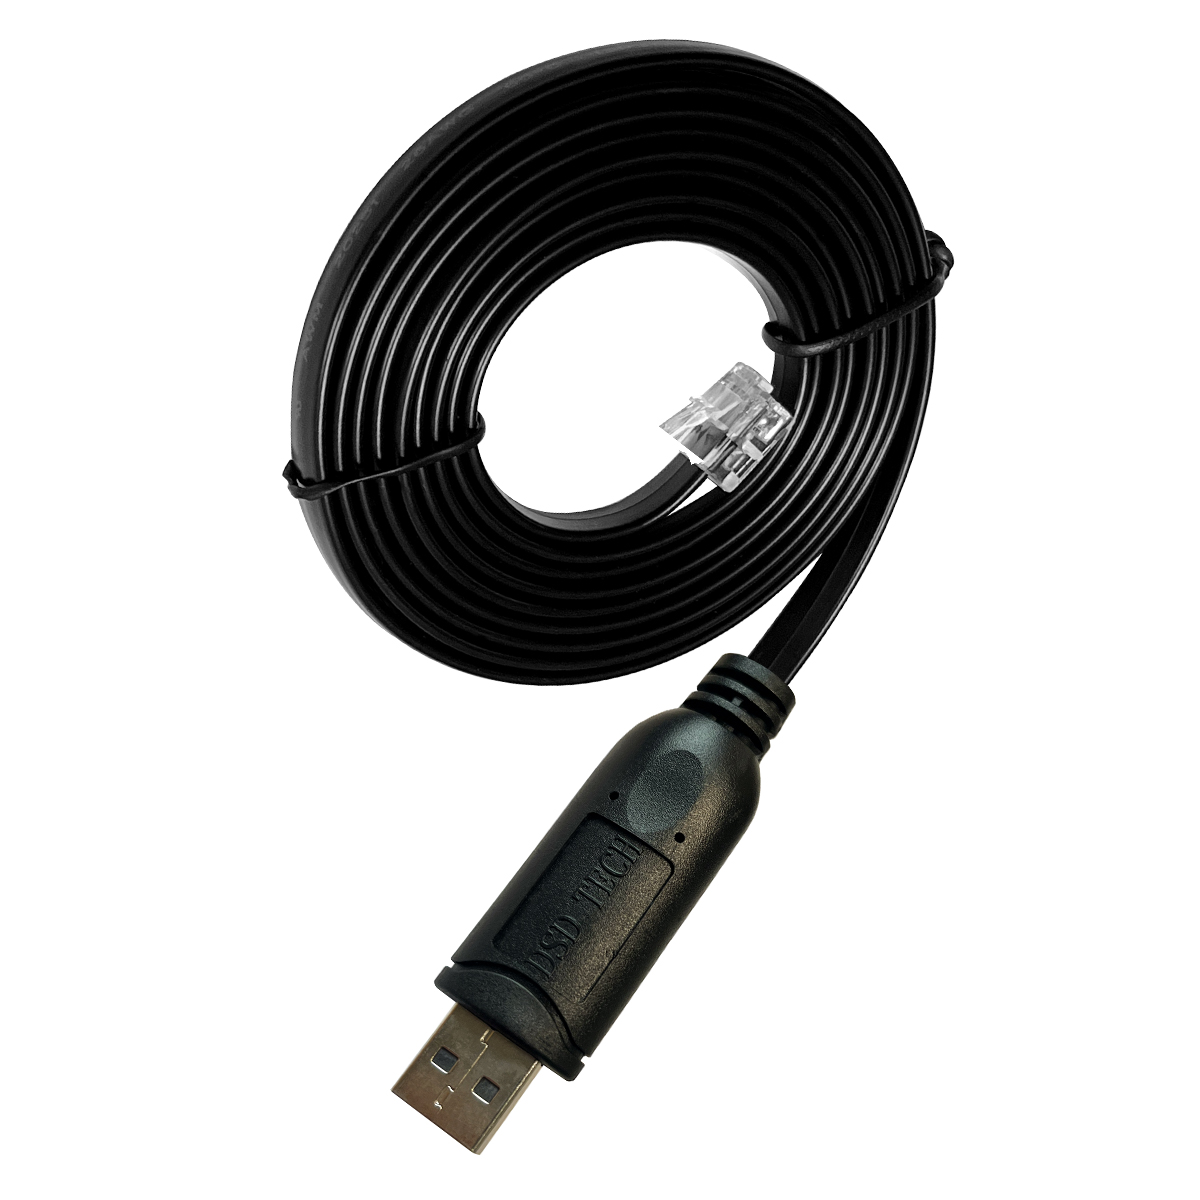 SH-RJ12B USB to RJ12 RS232 Cable